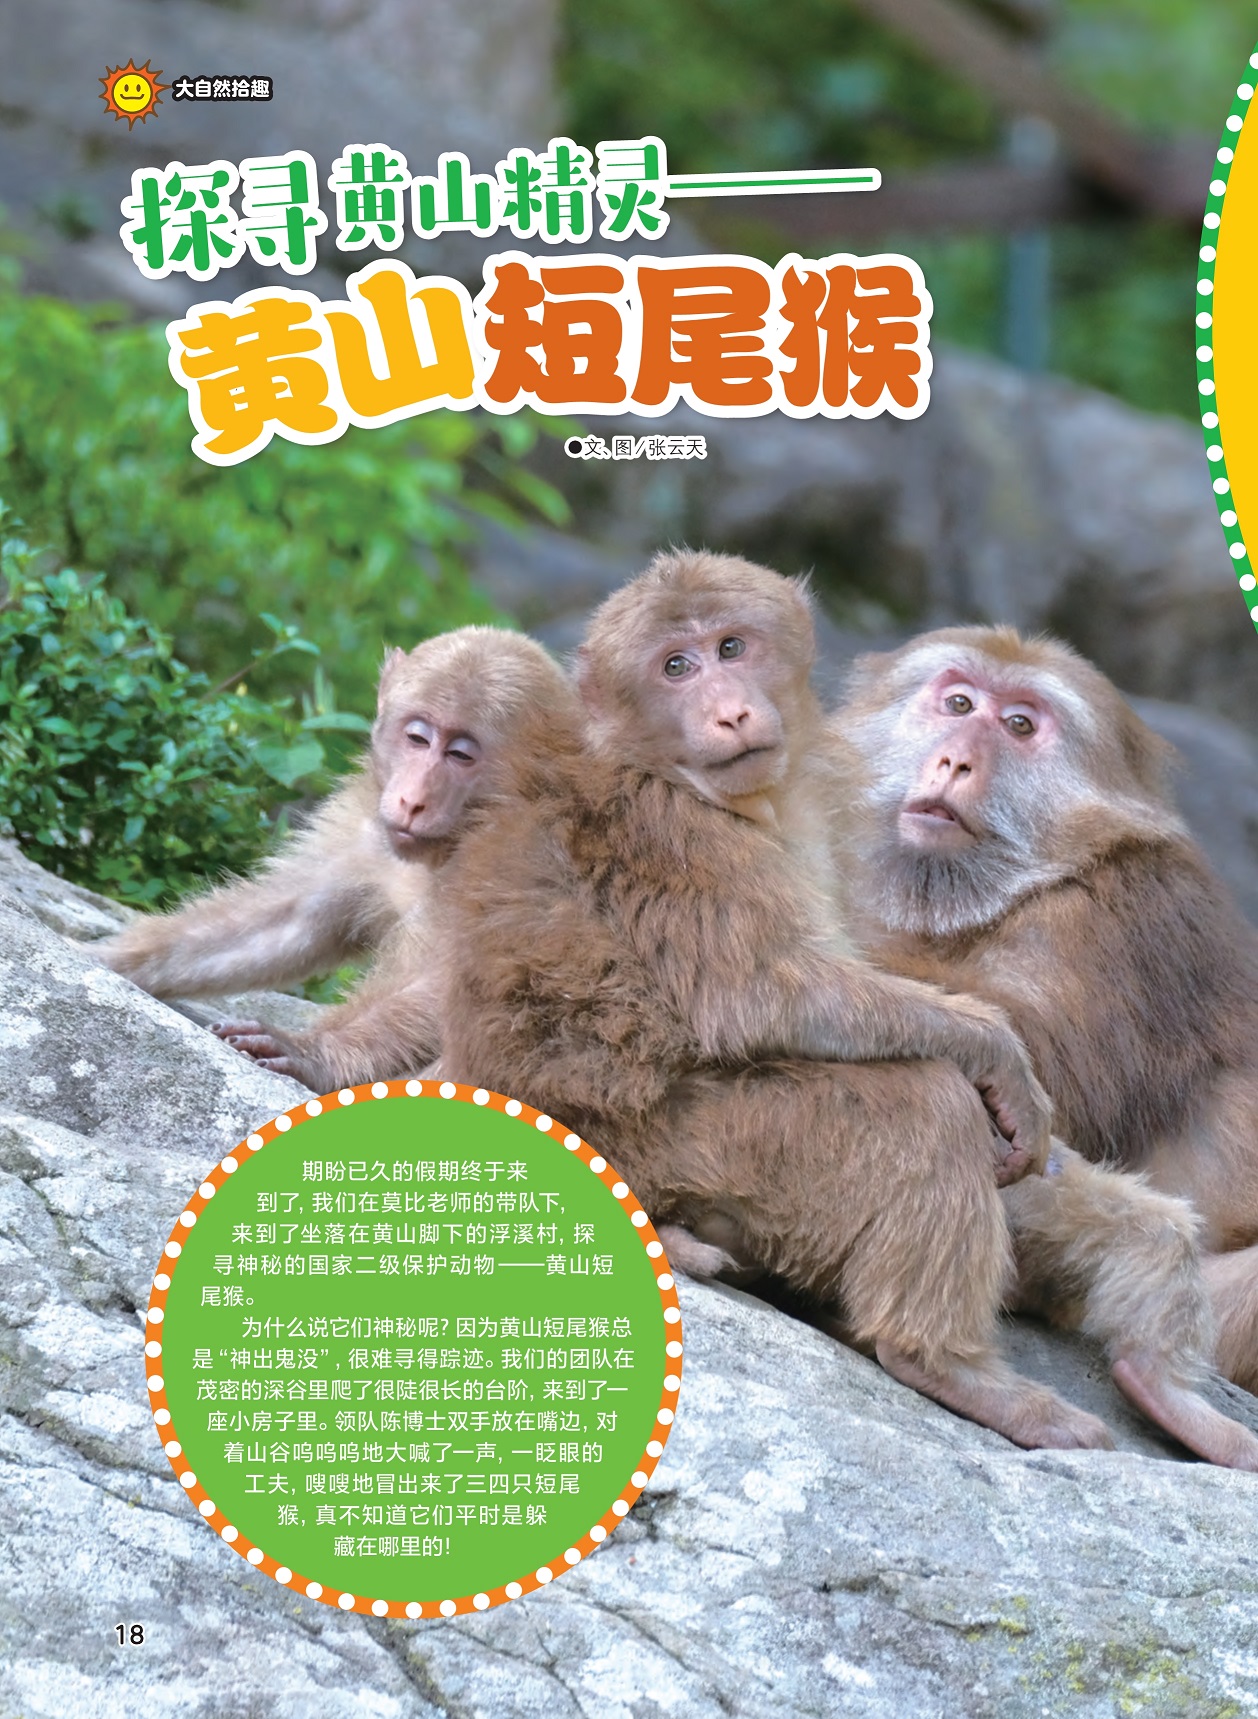 二级保护动物黄山短尾猴,黄山短尾猴难寻踪迹